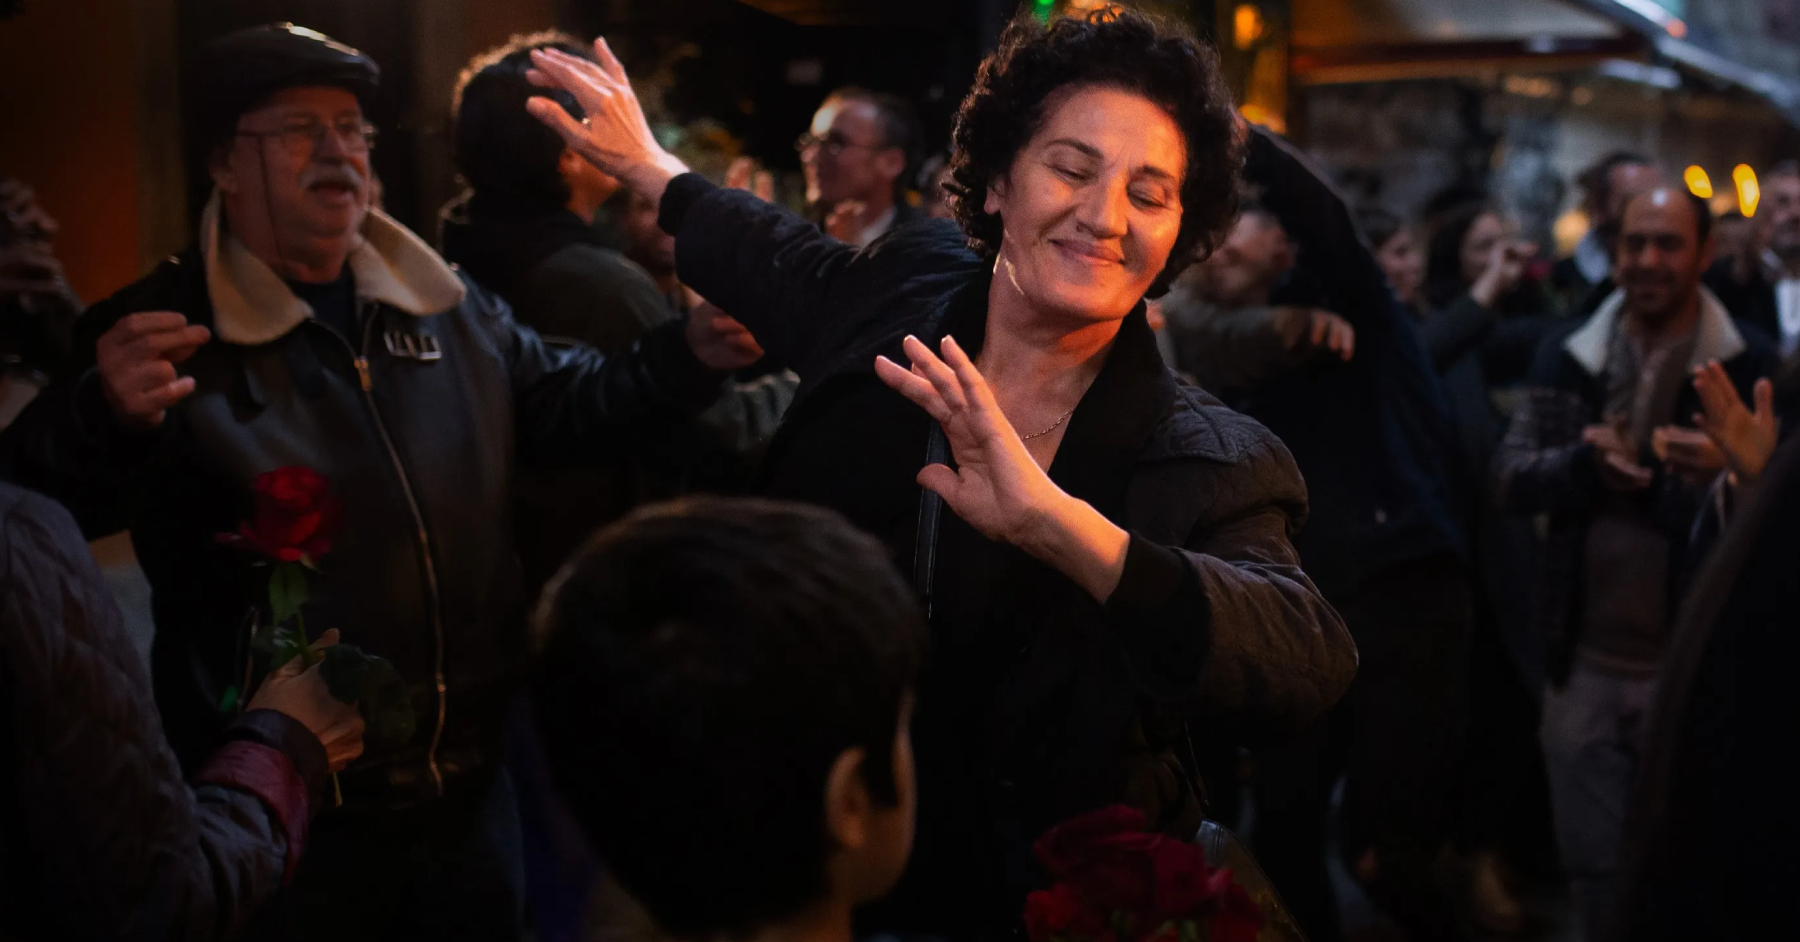 ლევან აკინის LGBTQ დრამა "ბერლინალეს" ერთ-ერთი რჩეული ფილმია